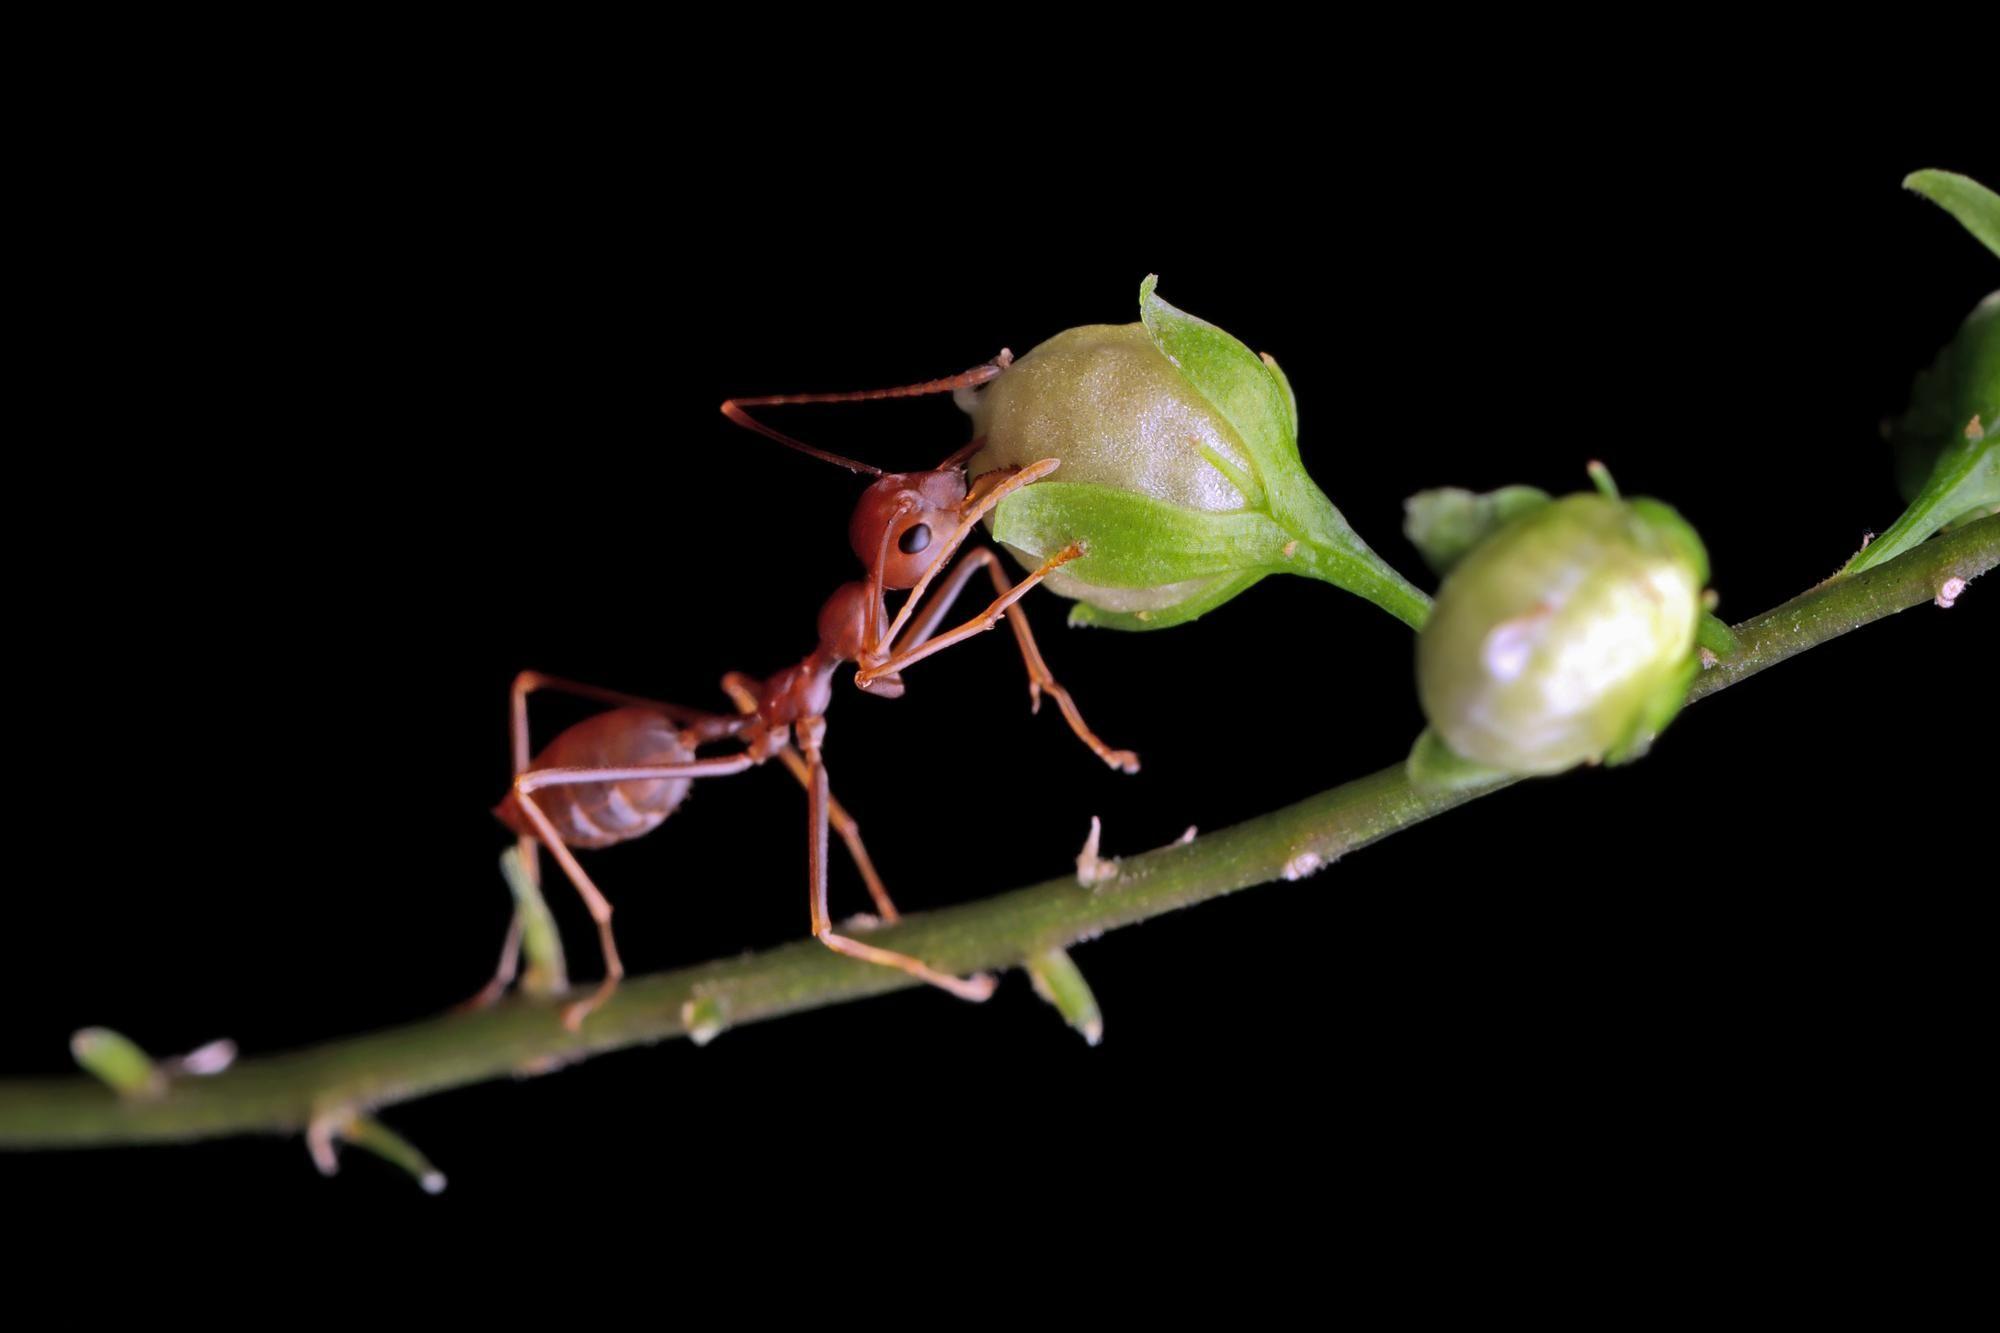 Муравей Oecophylla smaragdina. Муравьи Ткачи. Летучие муравьи. Муравьиное молоко. Обиженный муравей